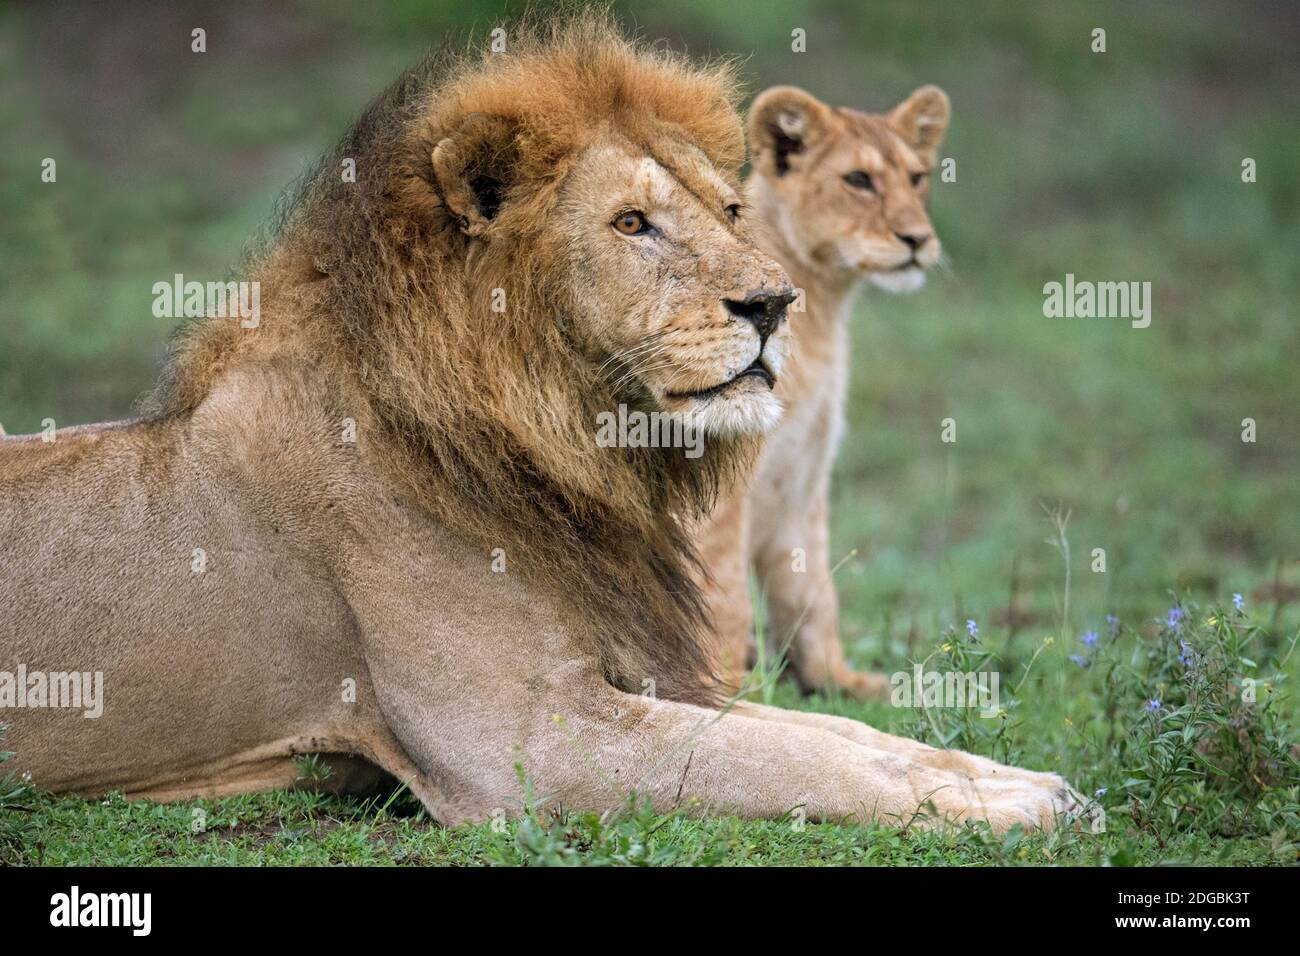 African Lion (Panthera leo) with its cub, Ndutu, Ngorongoro Conservation Area, Tanzania Stock Photo